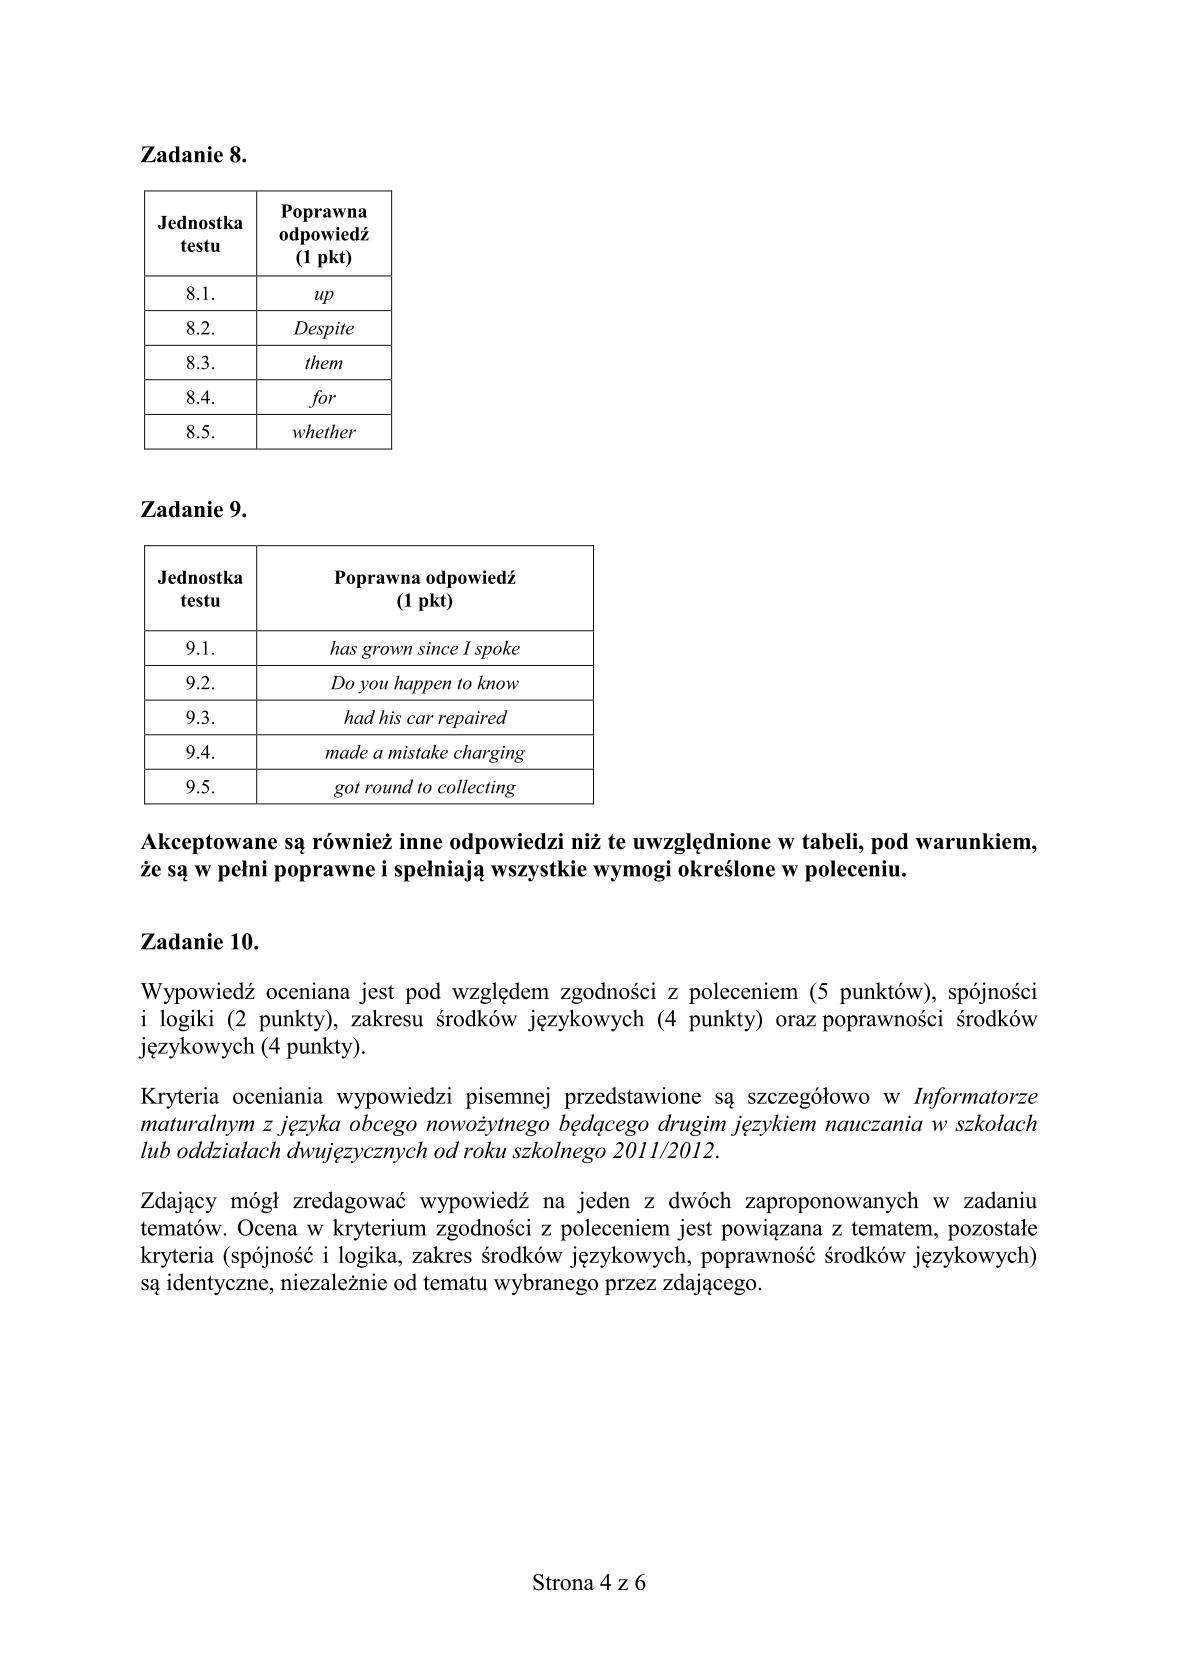 odpowiedzi-jezyk-angielski-dla-absolwentow-klas-dwujezycznych-matura-2014-str.4